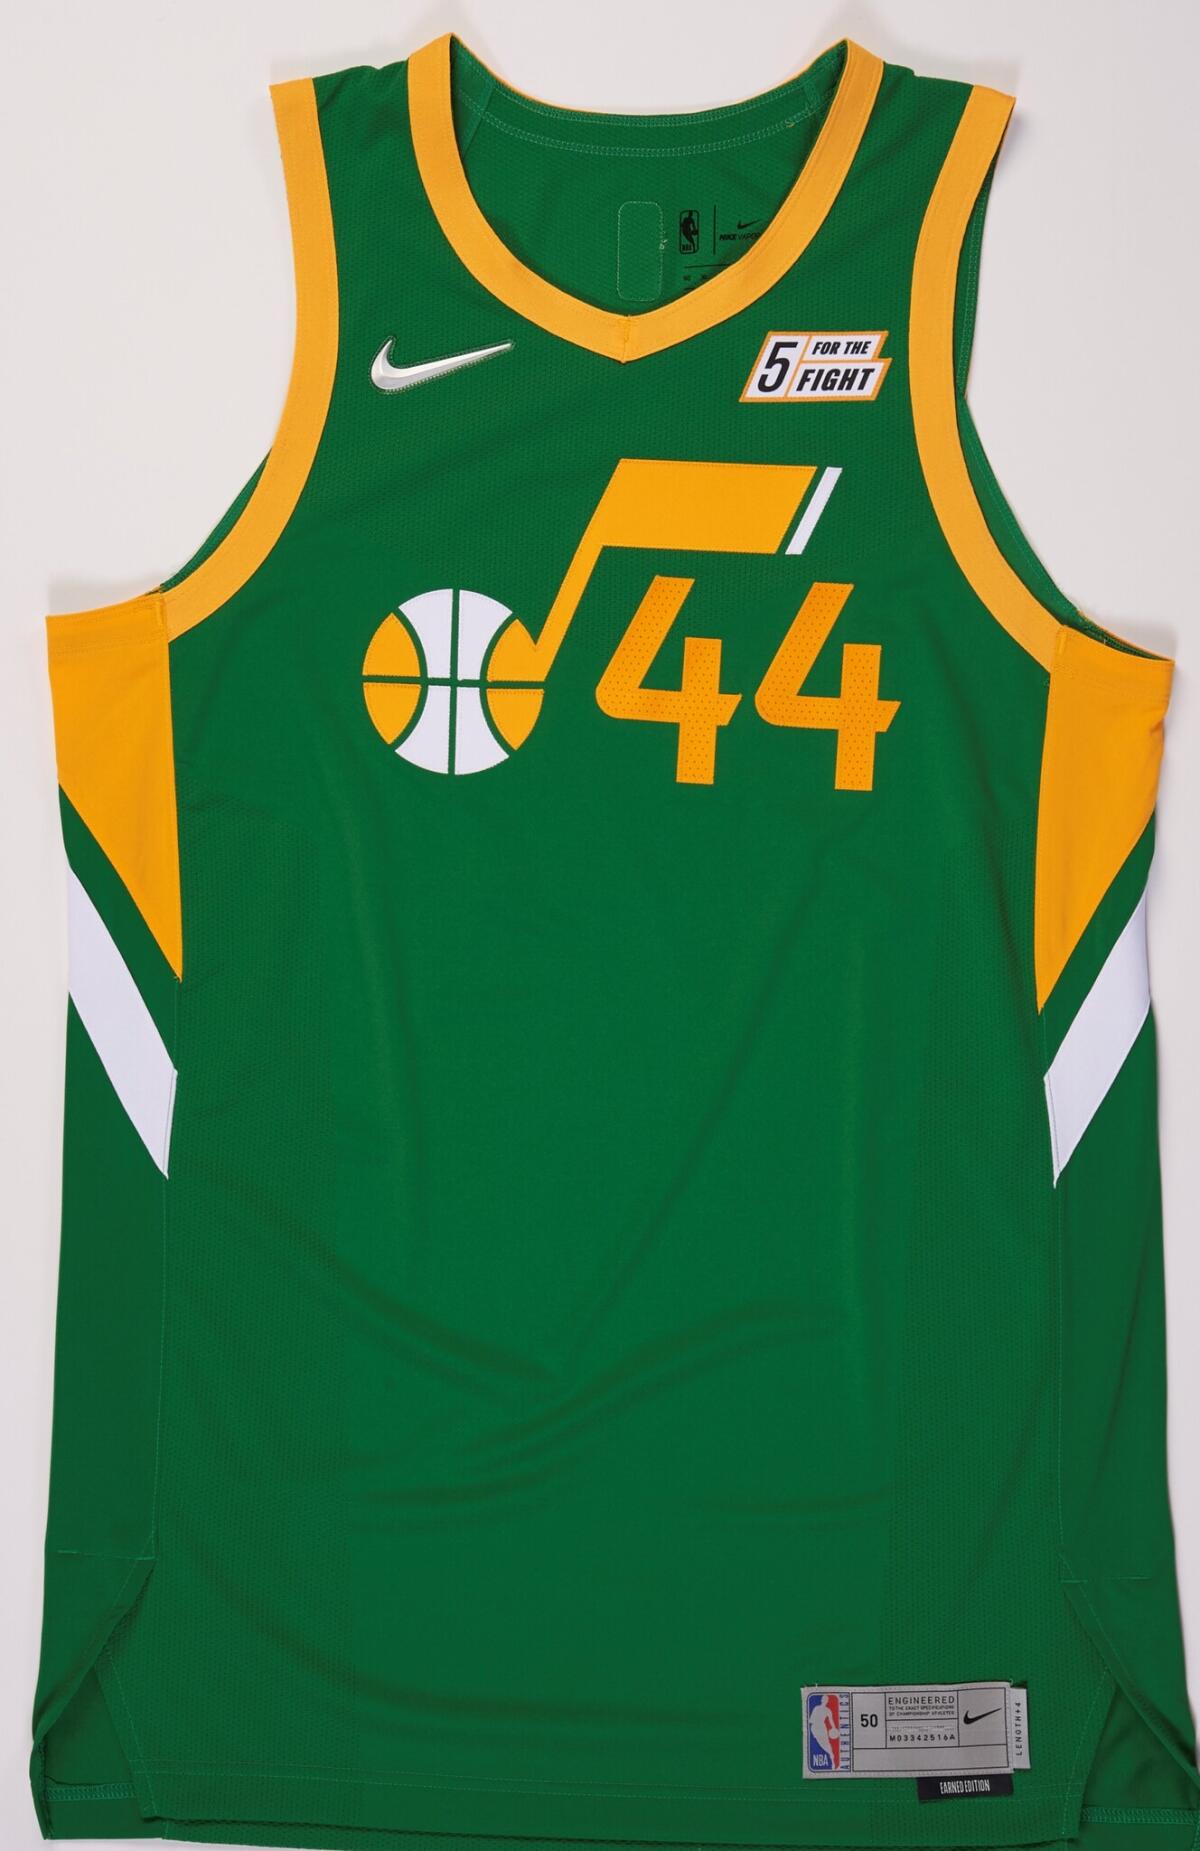 Utah Jazz "Earned Edition" jersey